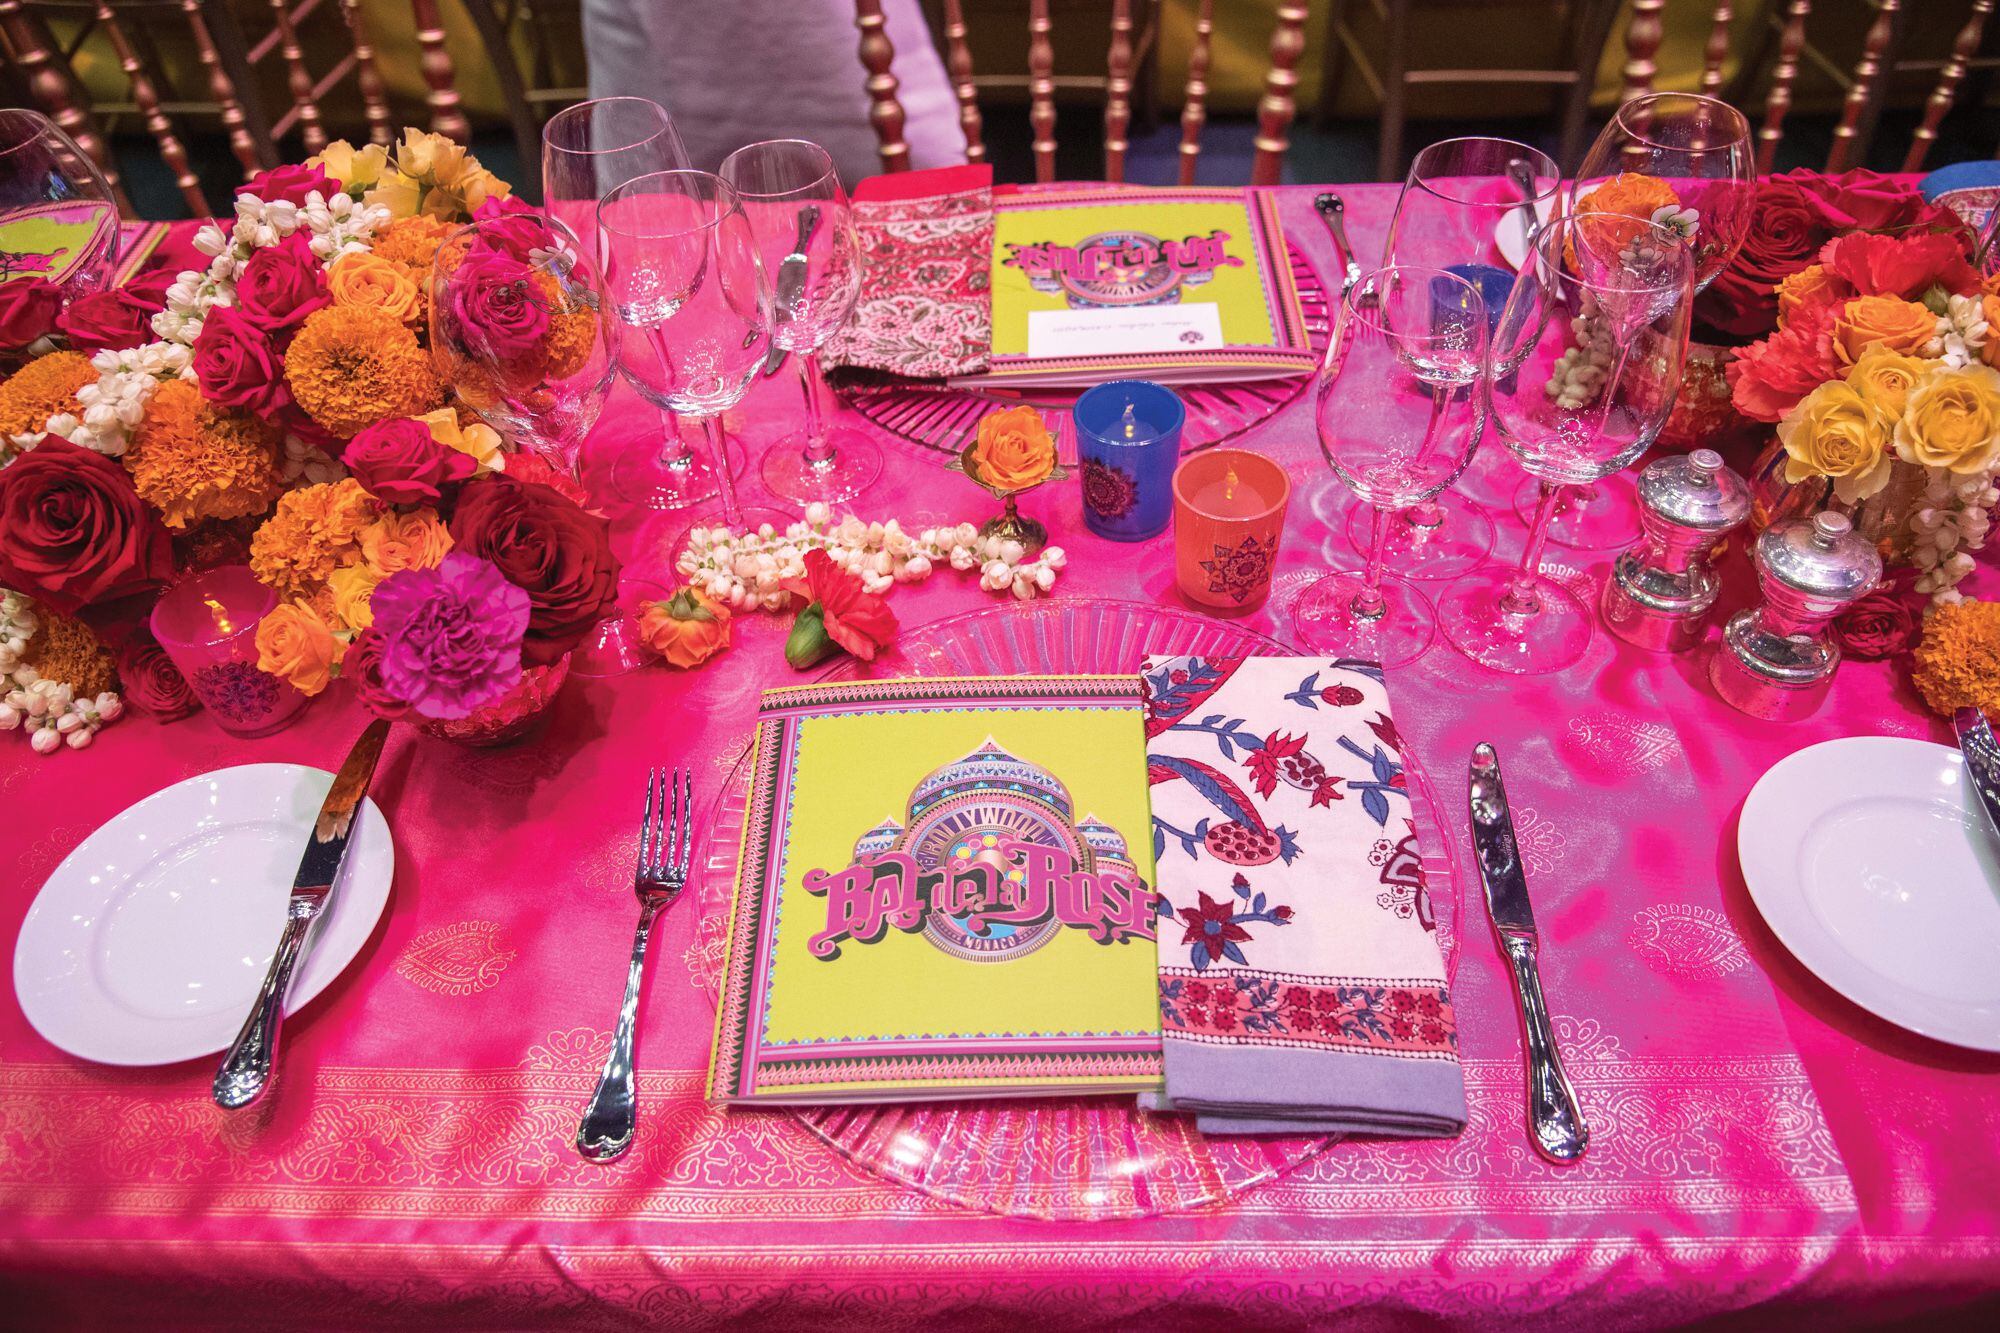 La decoración de las mesas estaba inspirada en los saris, trajes tradicionales del sur de la India. Para los arreglos florales se usaron unas 12 mil rosas, 6000 claveles y guirnaldas de jazmín.